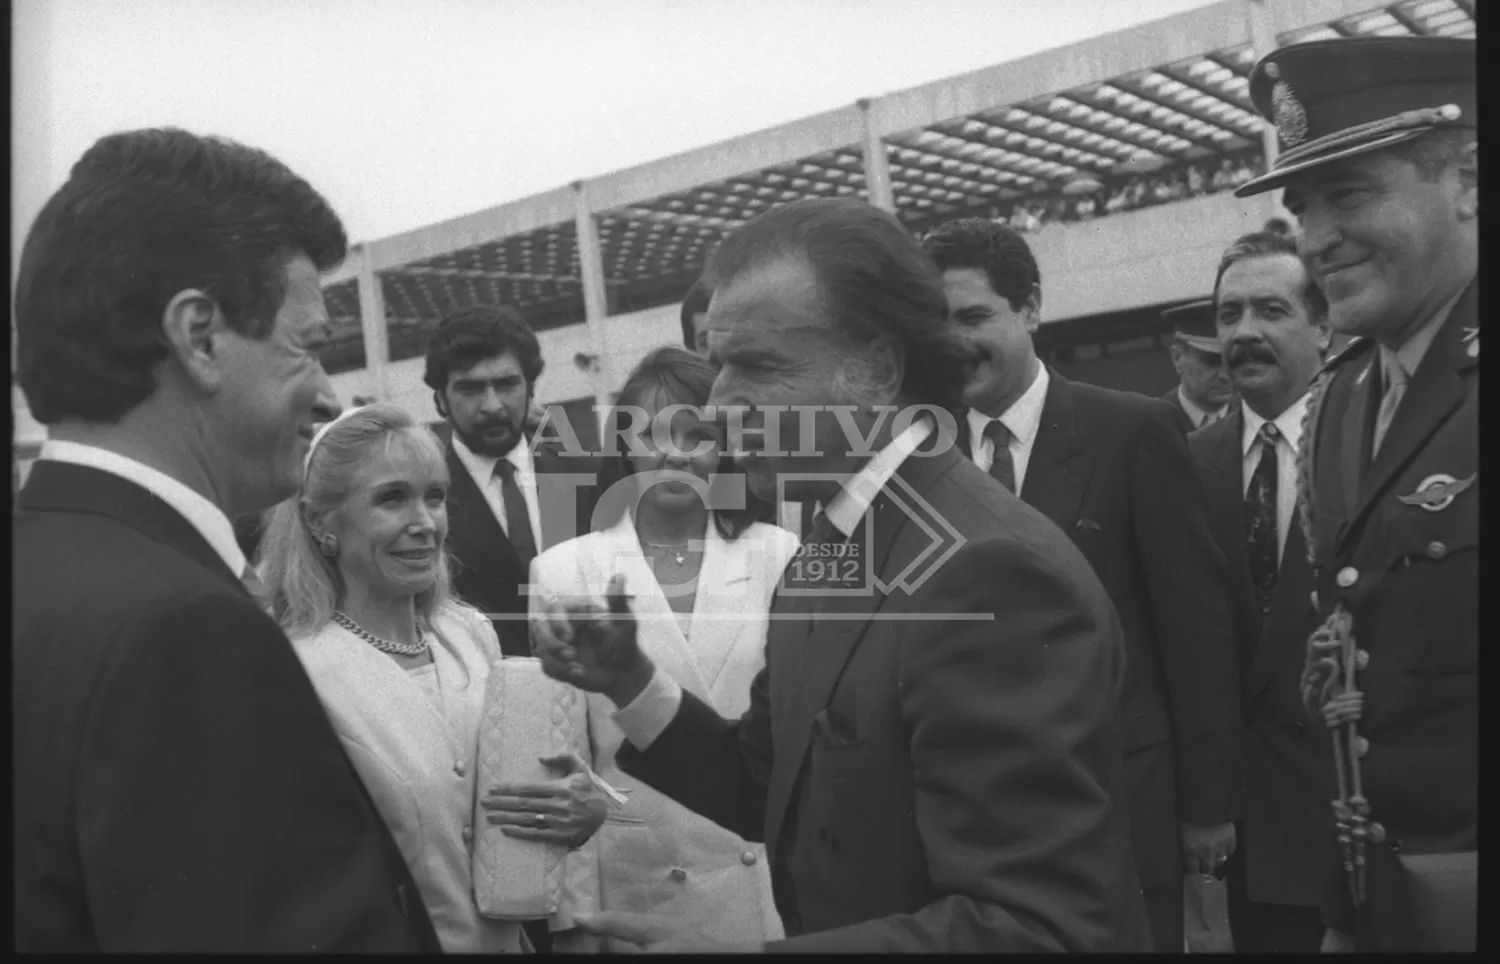 El presidente Carlos Menem, junto al gobernador Palito Ortega y su esposa Evangelina Salazar, durante una visita a  Tucumán en 1992.